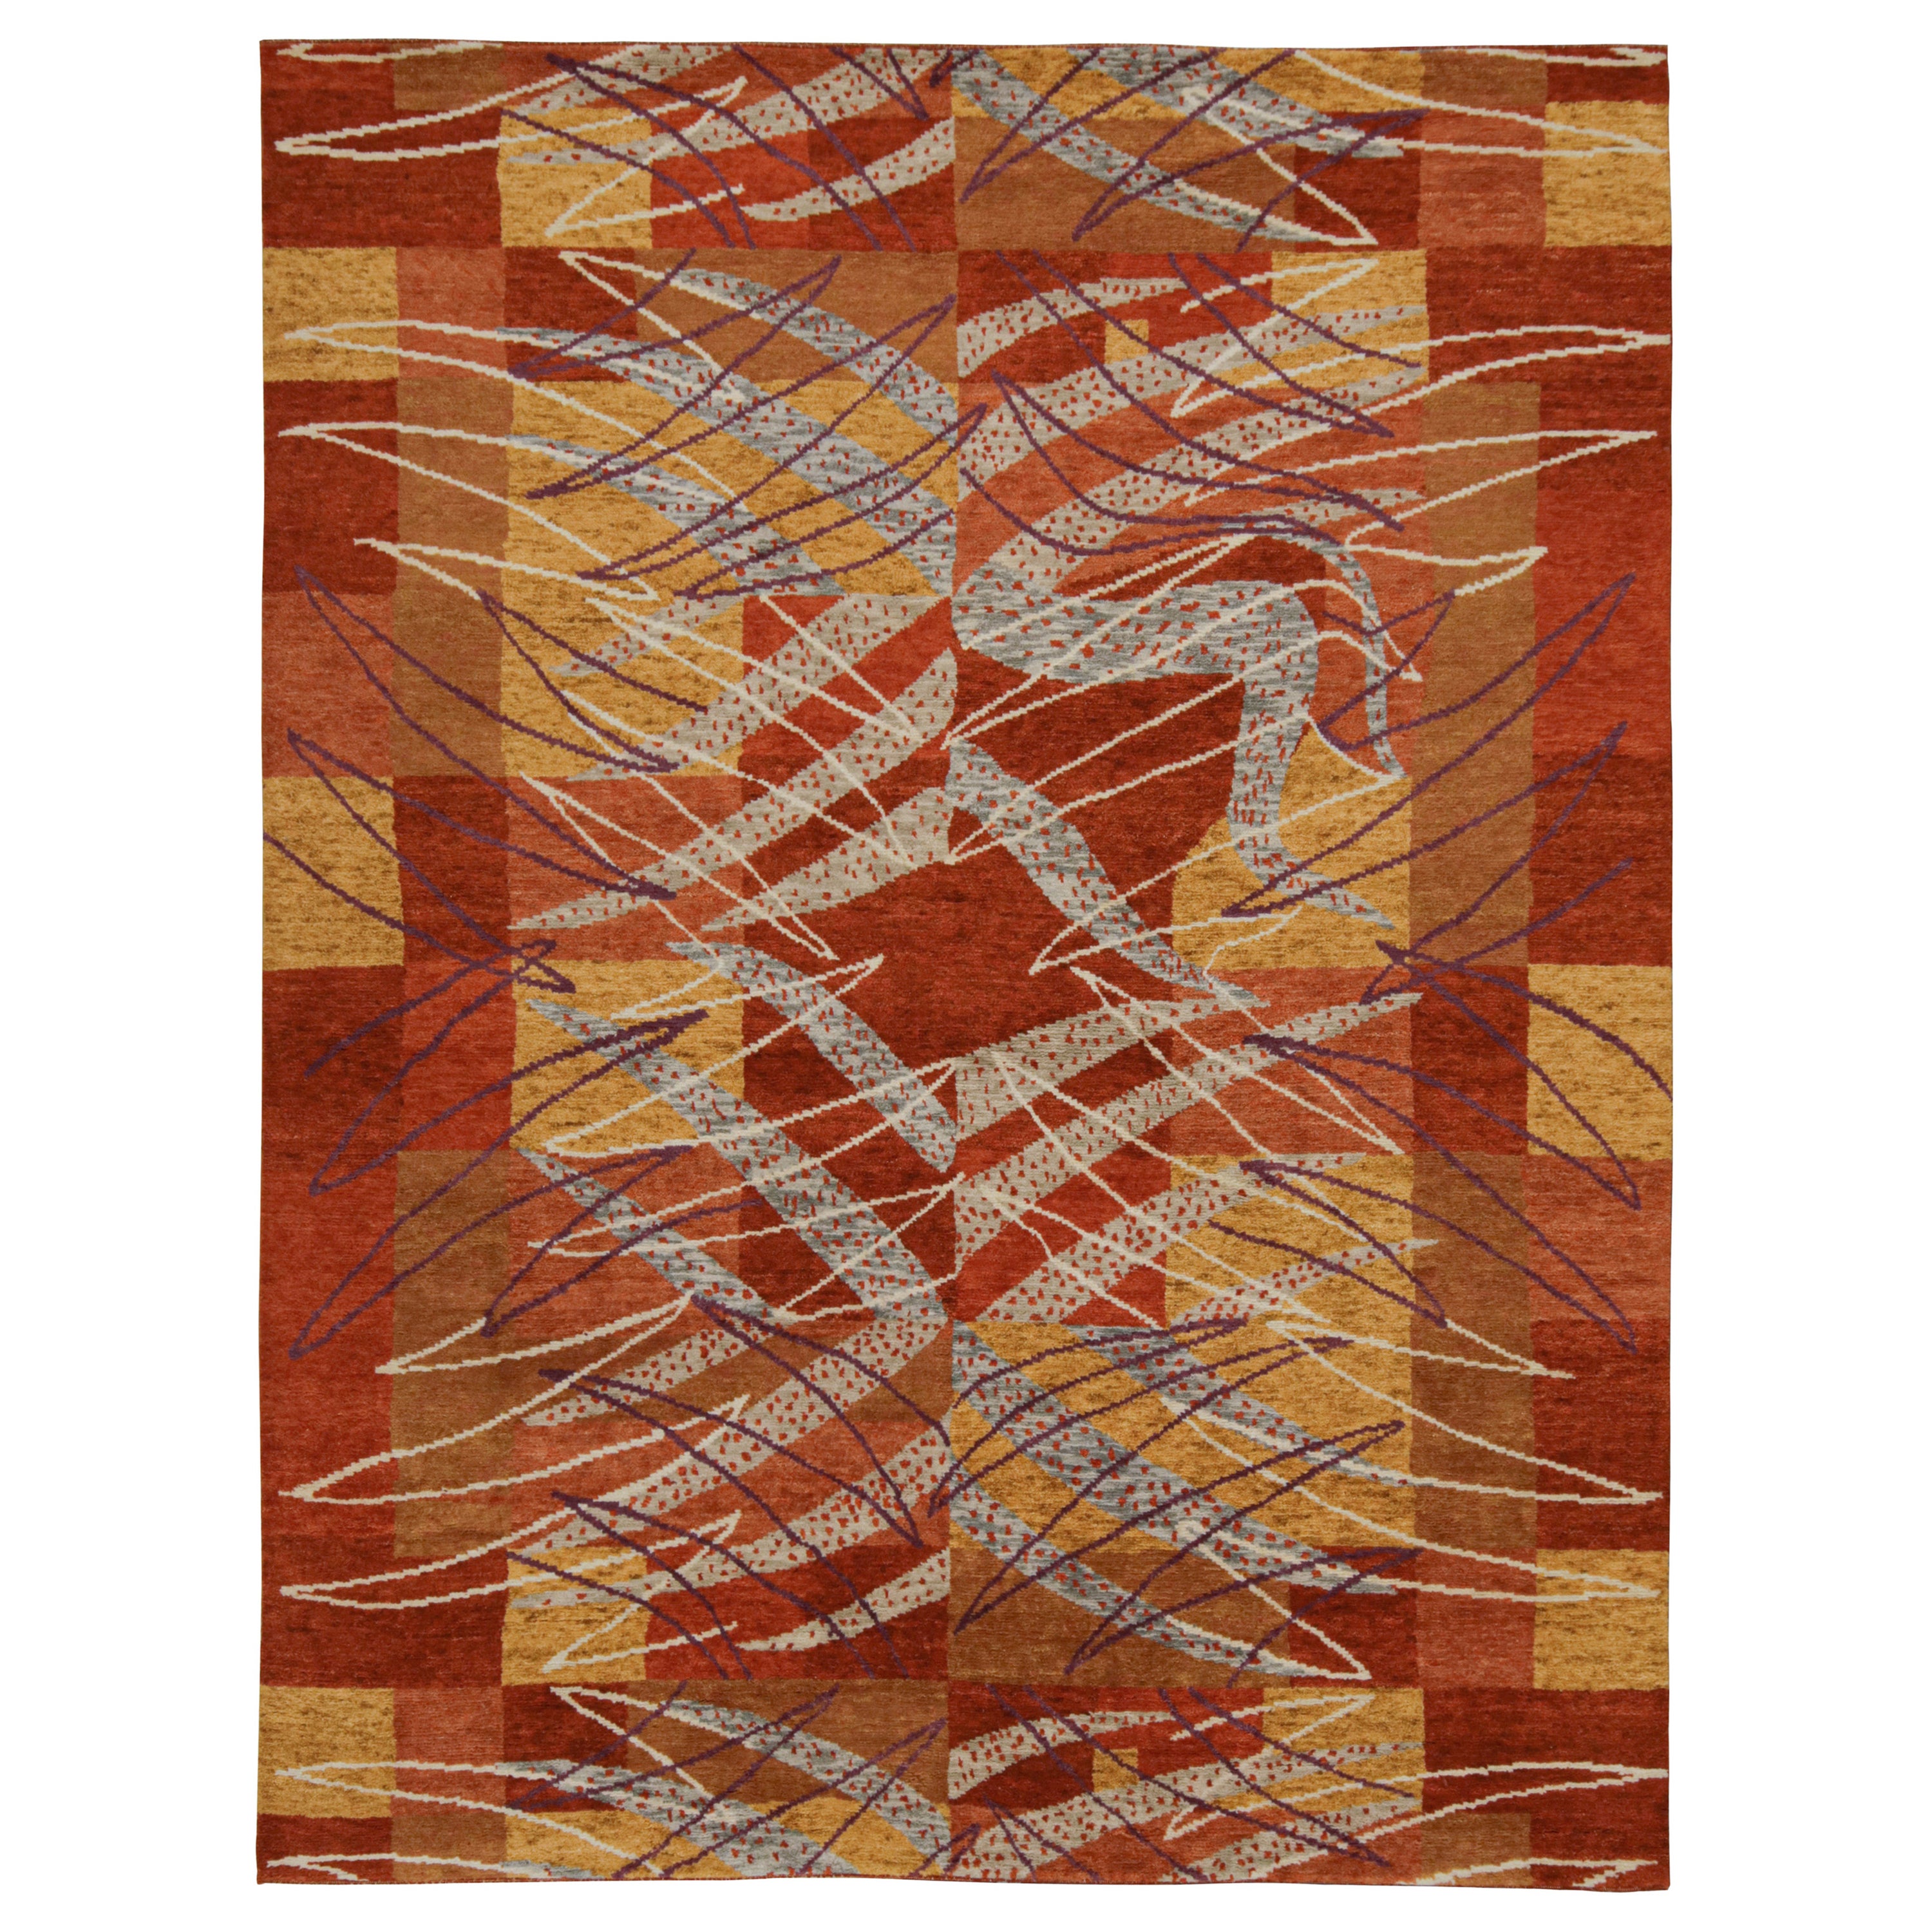 Rug & Kilim's Teppich im skandinavischen Stil in Rot, Gold und Grau mit geometrischen Mustern